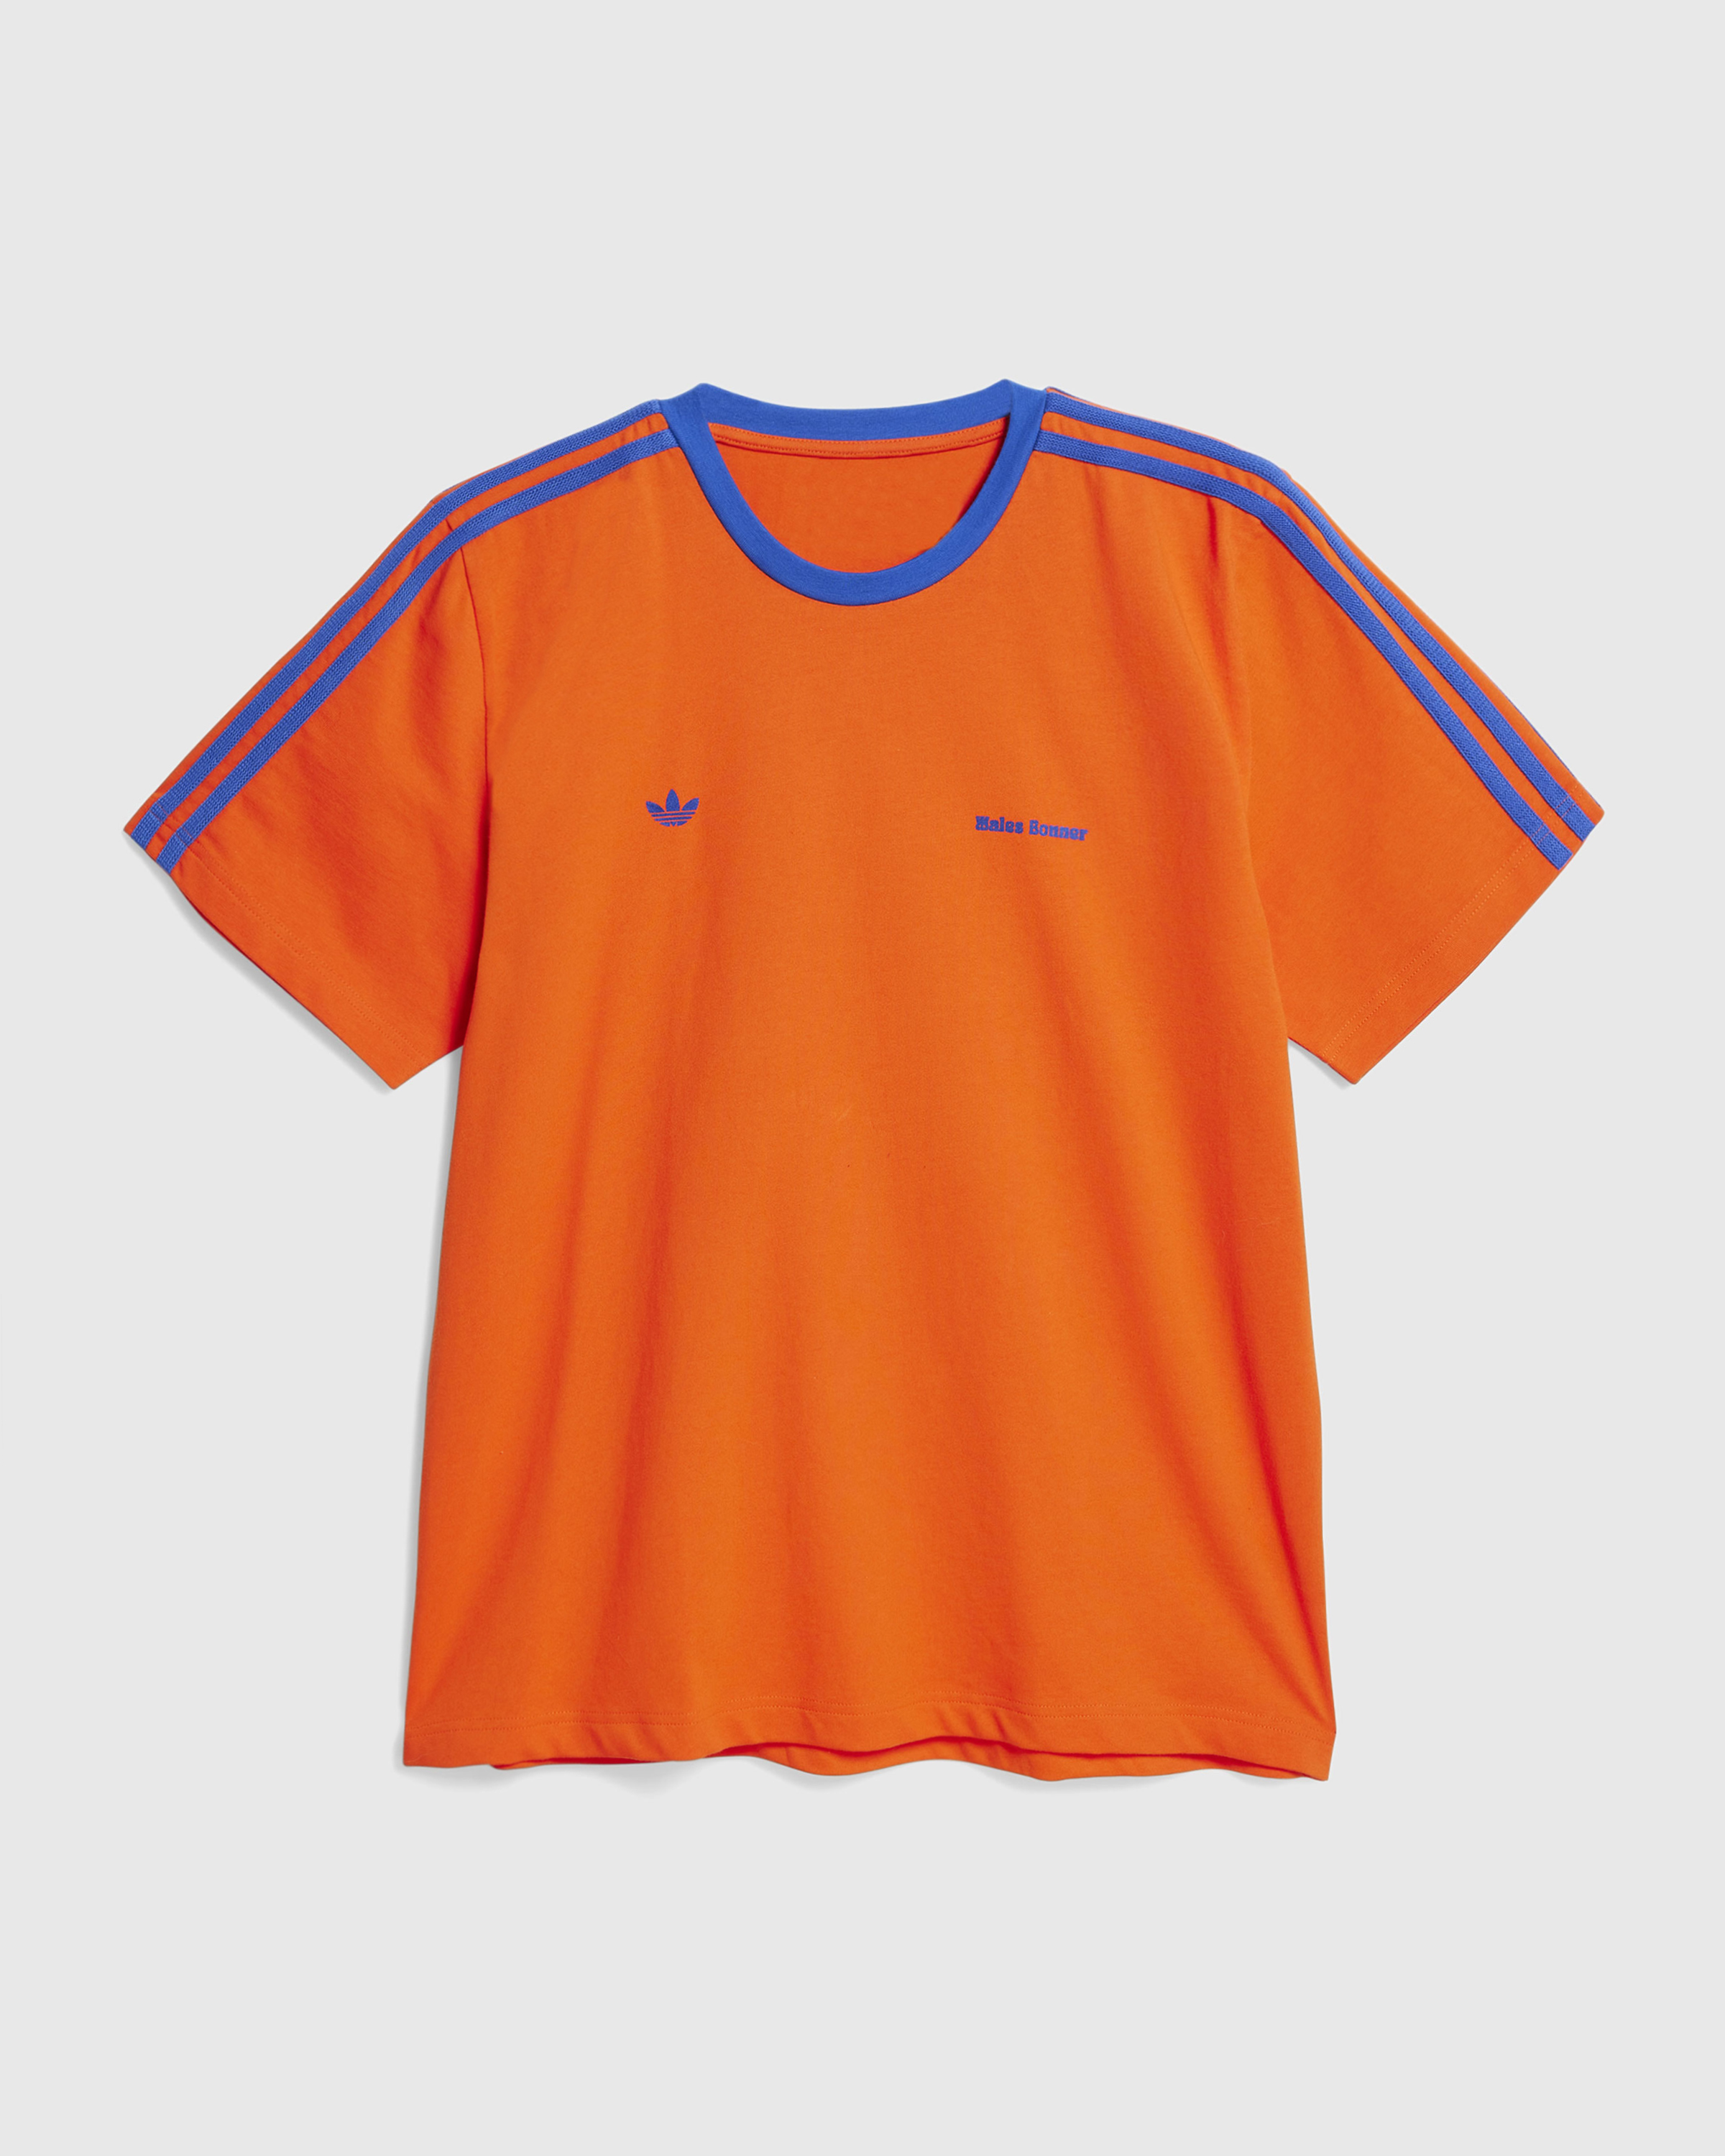 Adidas x Wales Bonner – Short-Sleeve Tee Bold Orange/Team Royal Blue - T-Shirts - Orange - Image 1